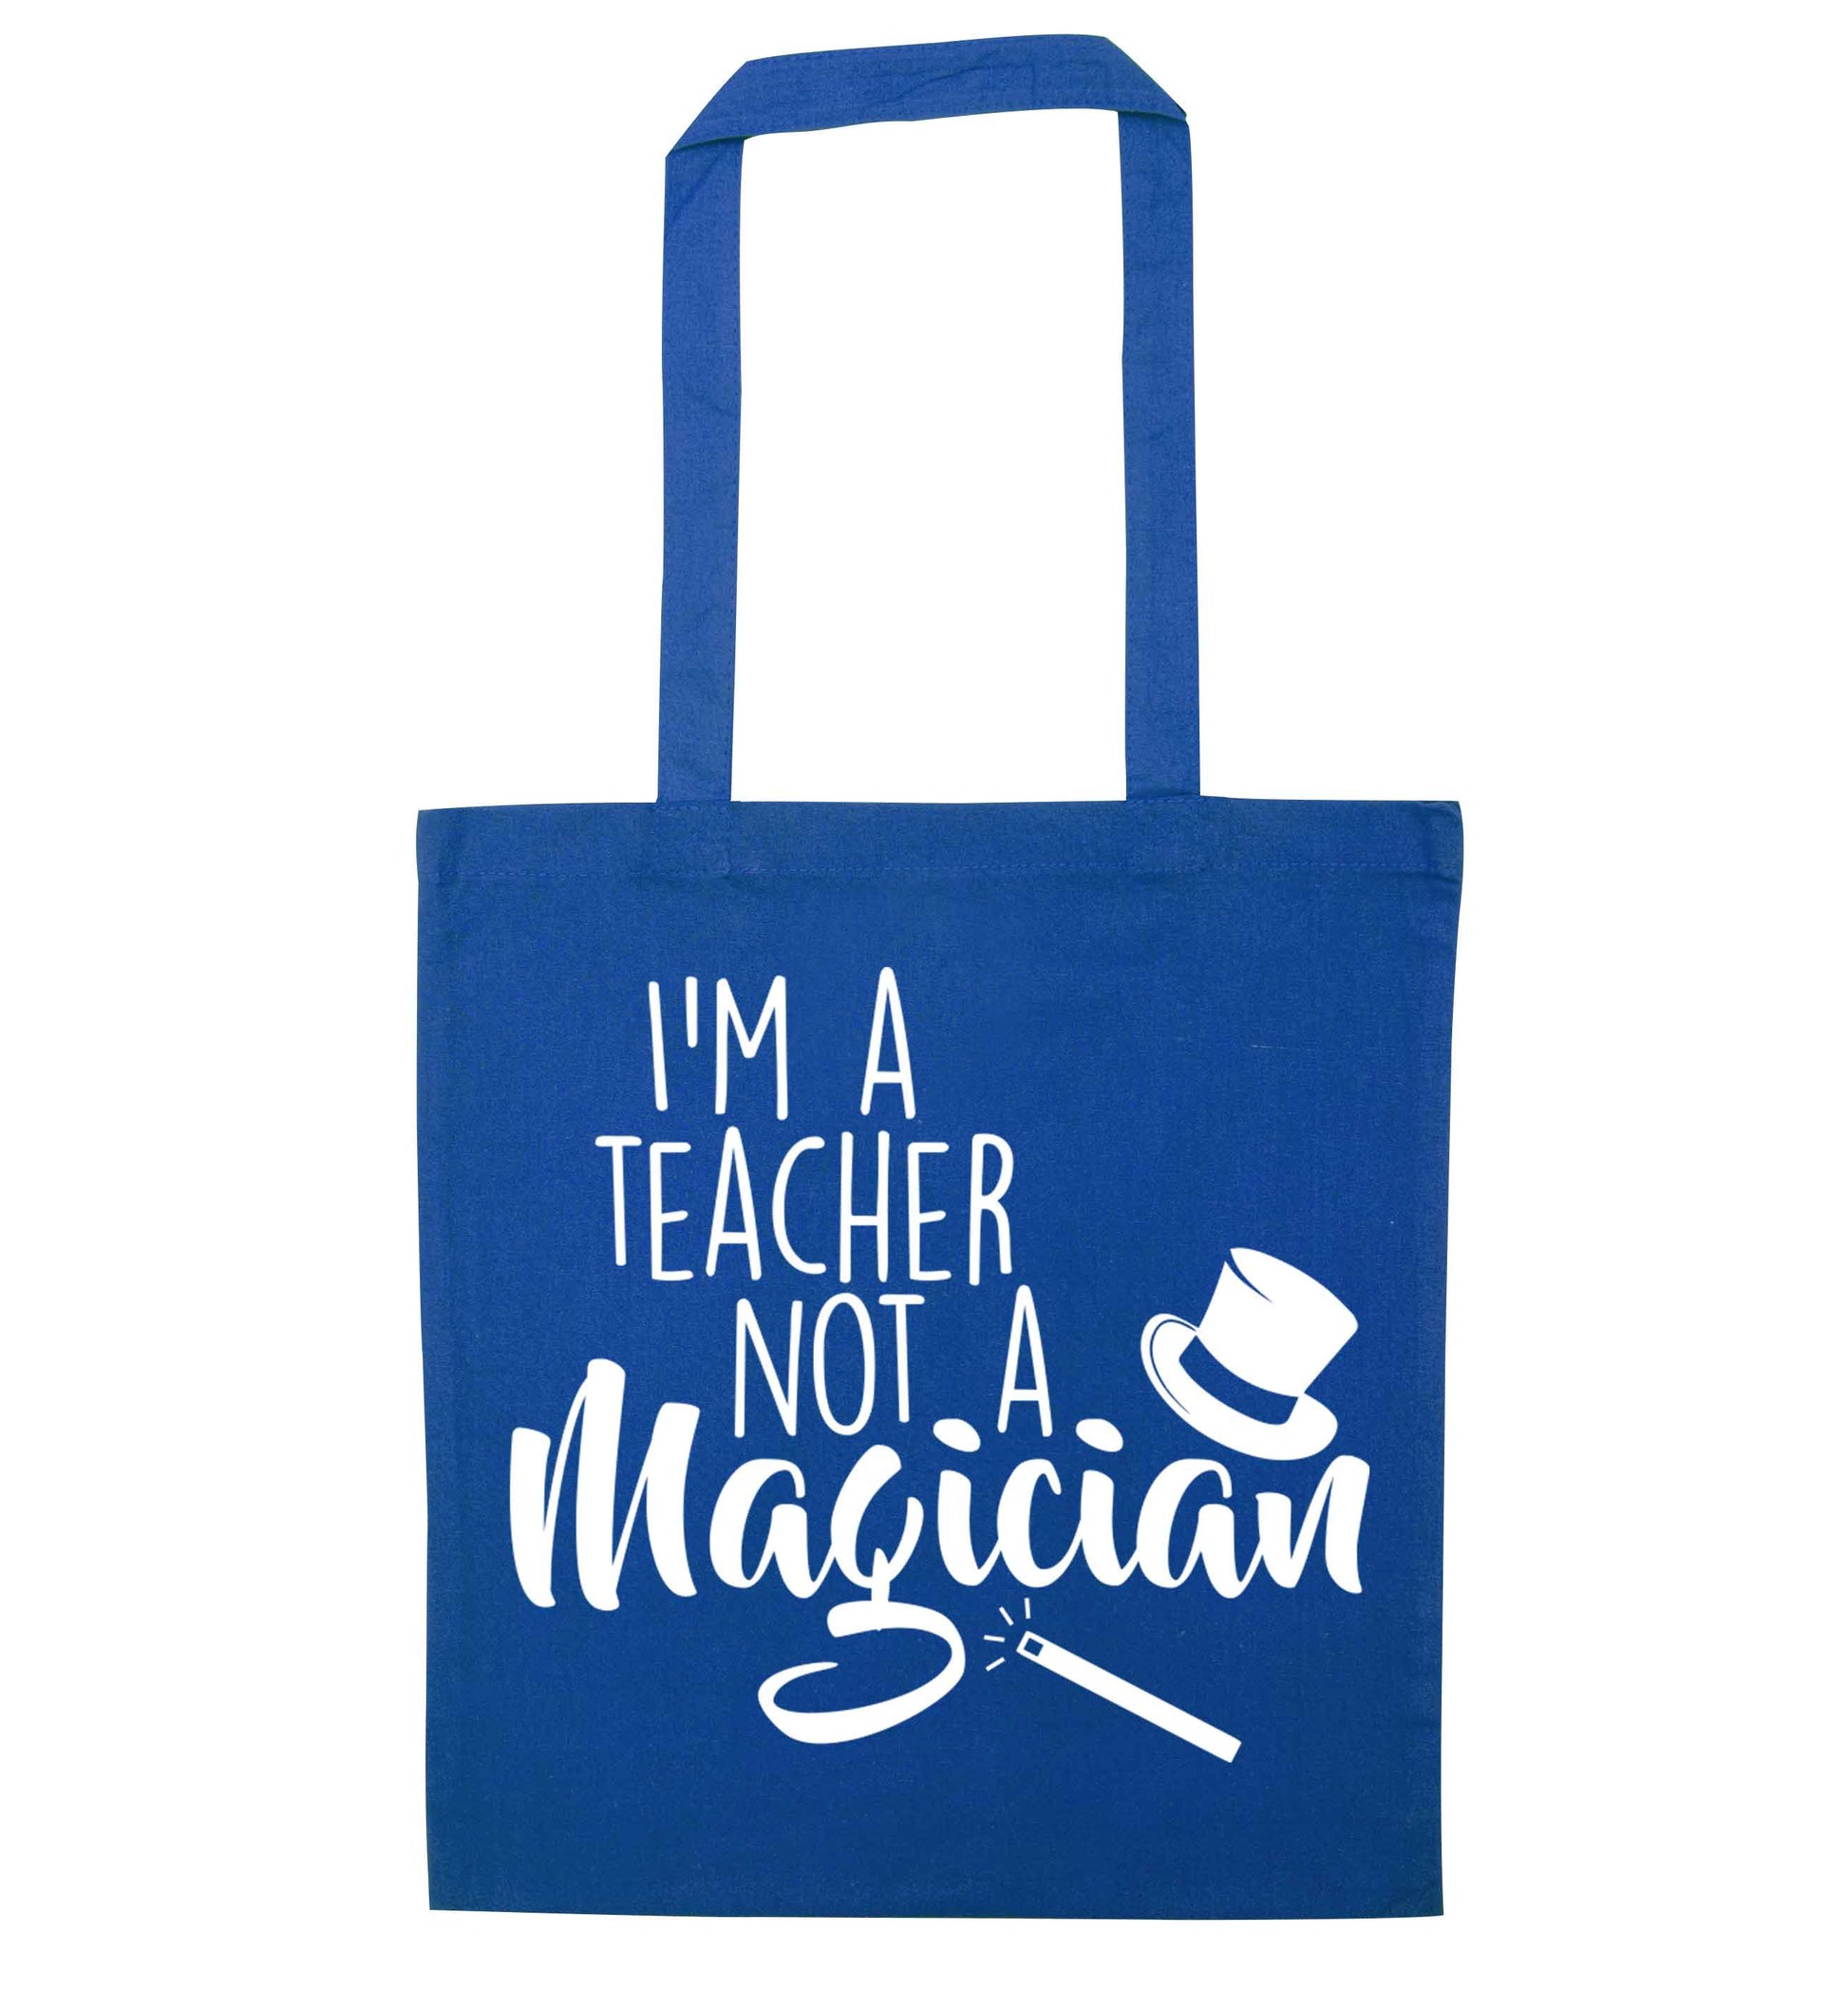 I'm a teacher not a magician blue tote bag